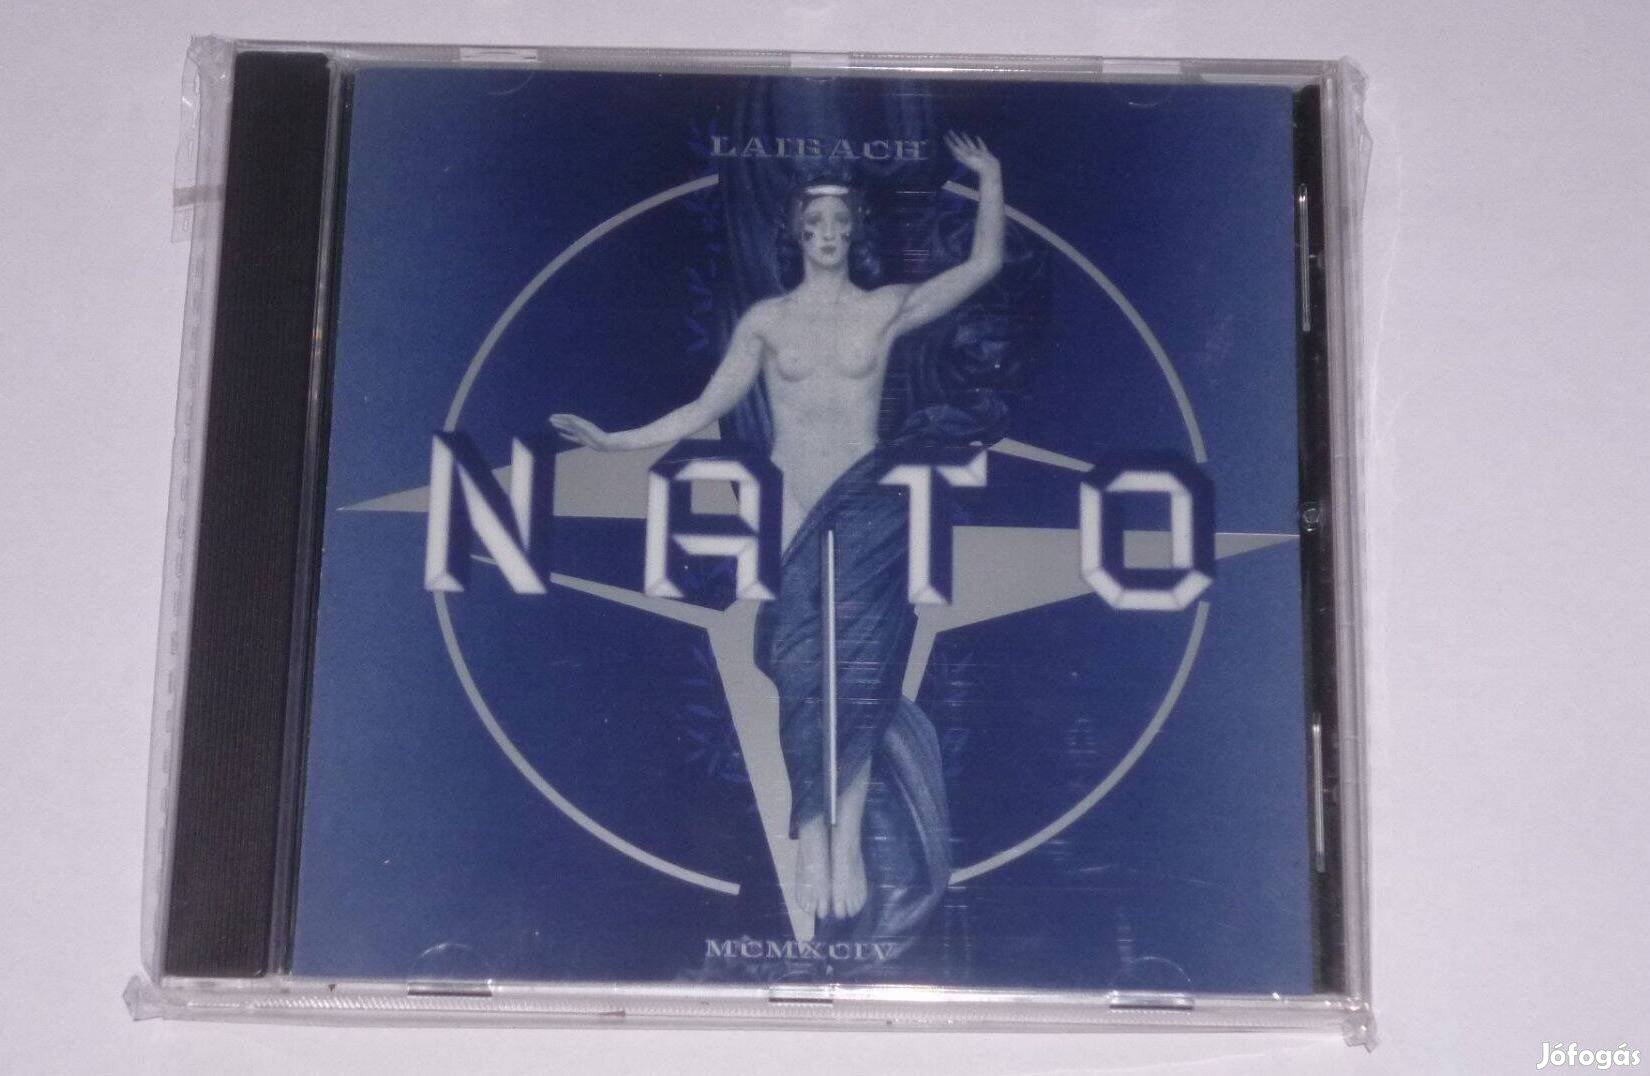 Laibach - NATO CD